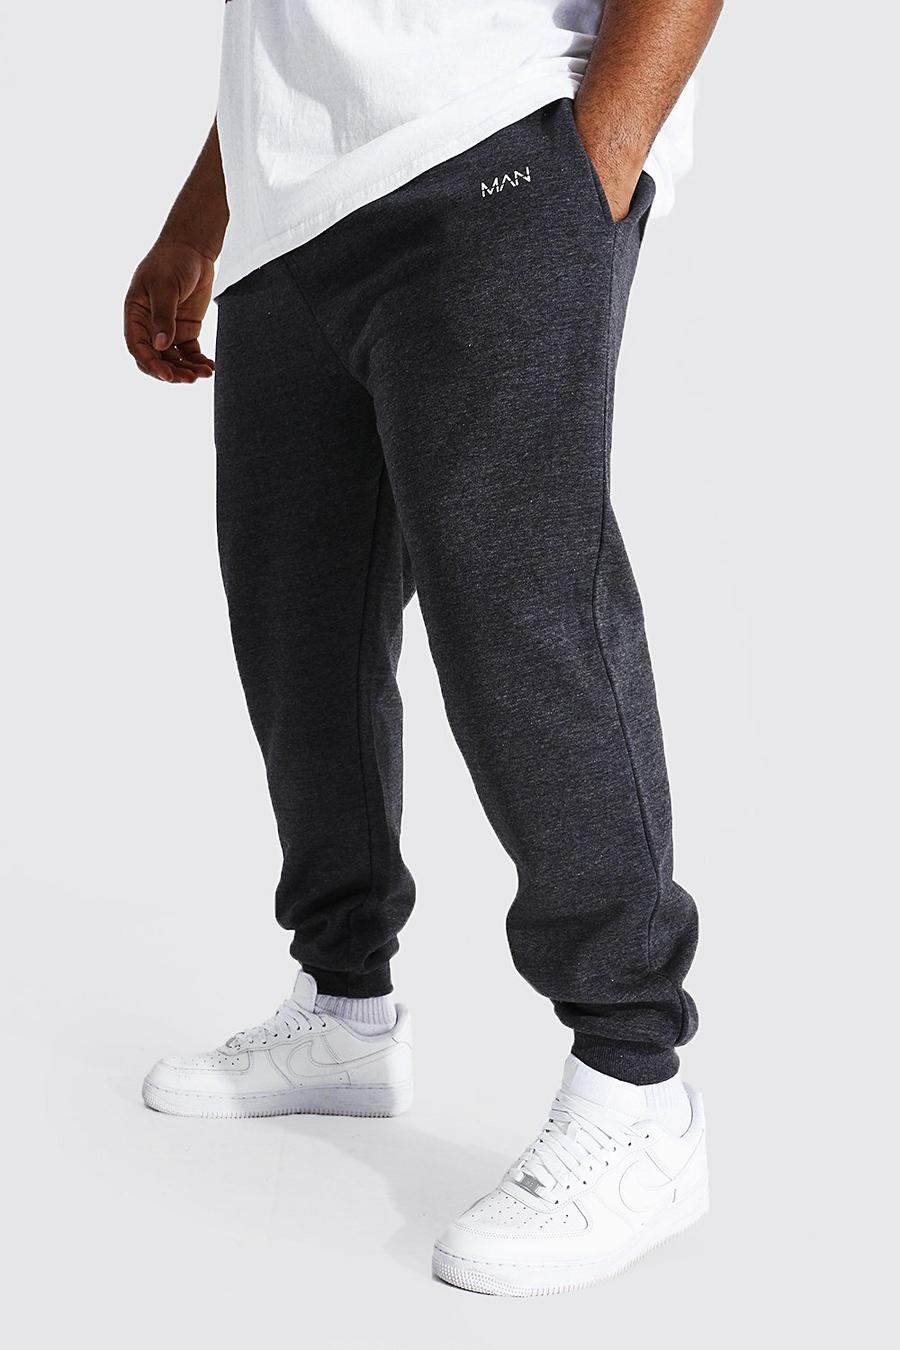 Pantalón deportivo Plus MAN ajustado reciclado, Charcoal grigio image number 1